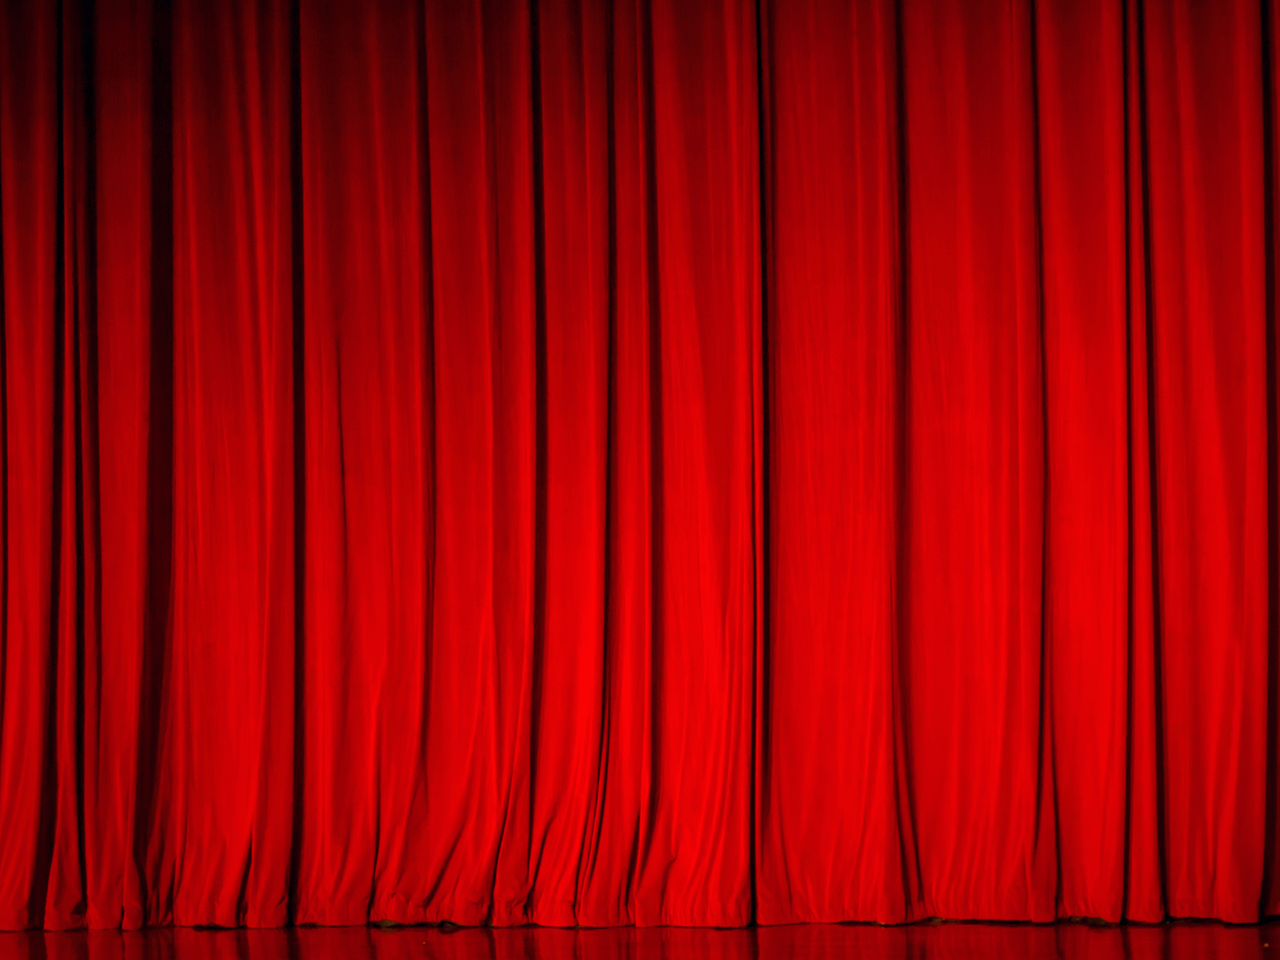 Pamela möchte auf die große Opernbühne. Ein roter geschlossener Vorhang auf einer Theaterbühne.